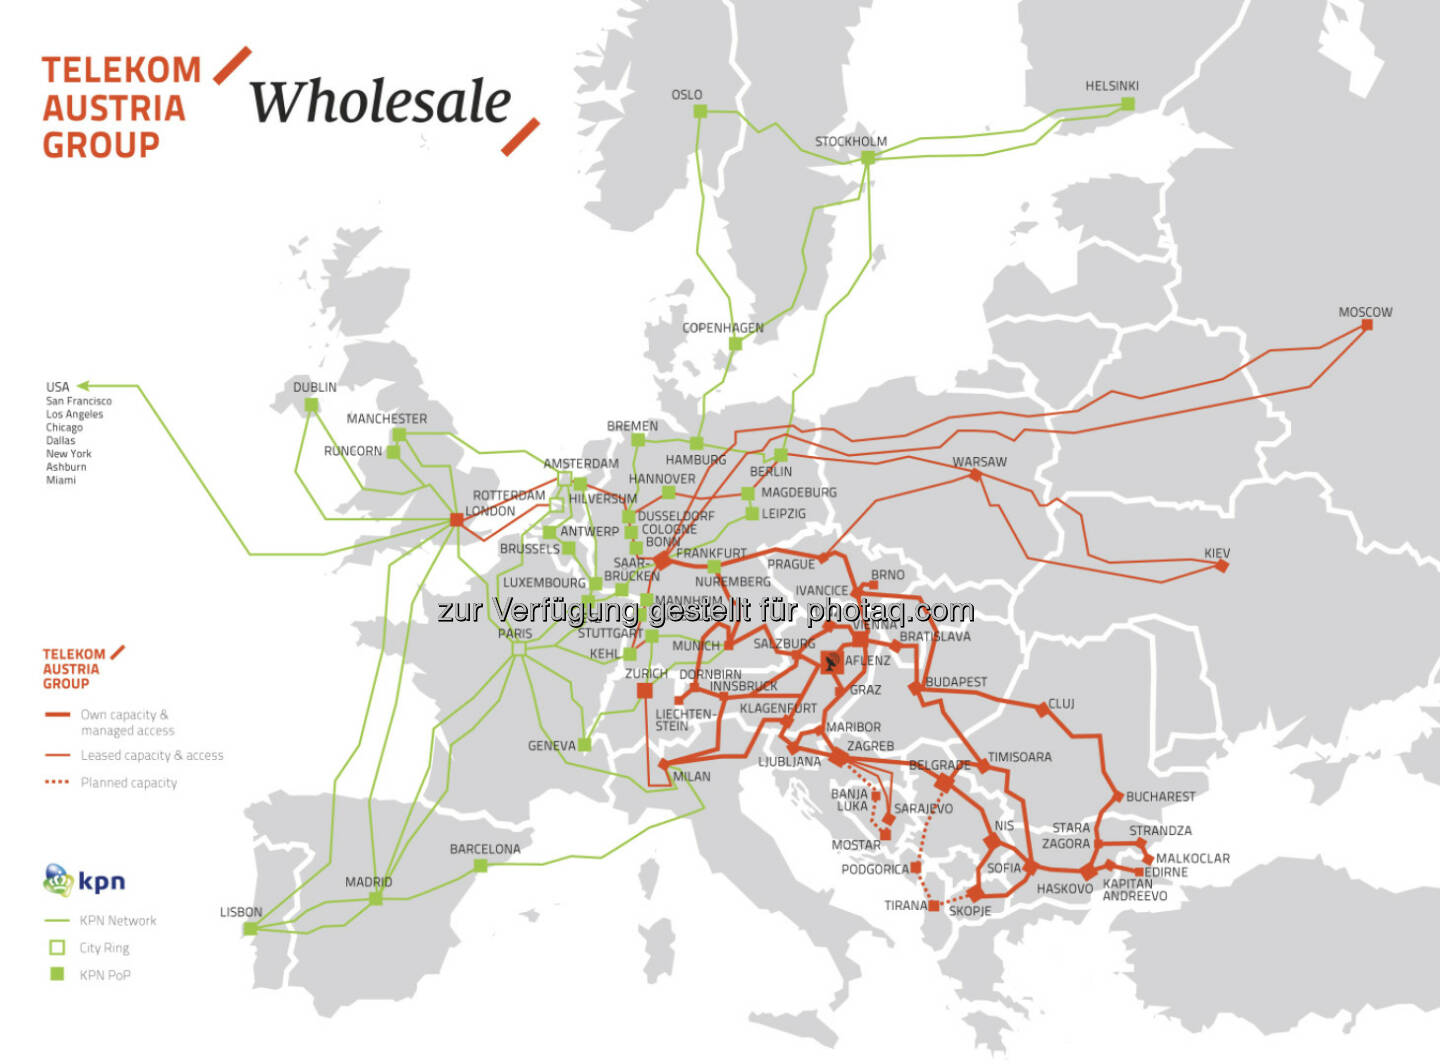 Telekom Austria Group und KPN International: Wholesale Partnerschaft bildet eines der größten Glasfasernetze Europas - gemeinsamer Footprint mehr als verdoppelt: 173 Points of Presence (PoP) in 35 Ländern (c) Telekom Austria